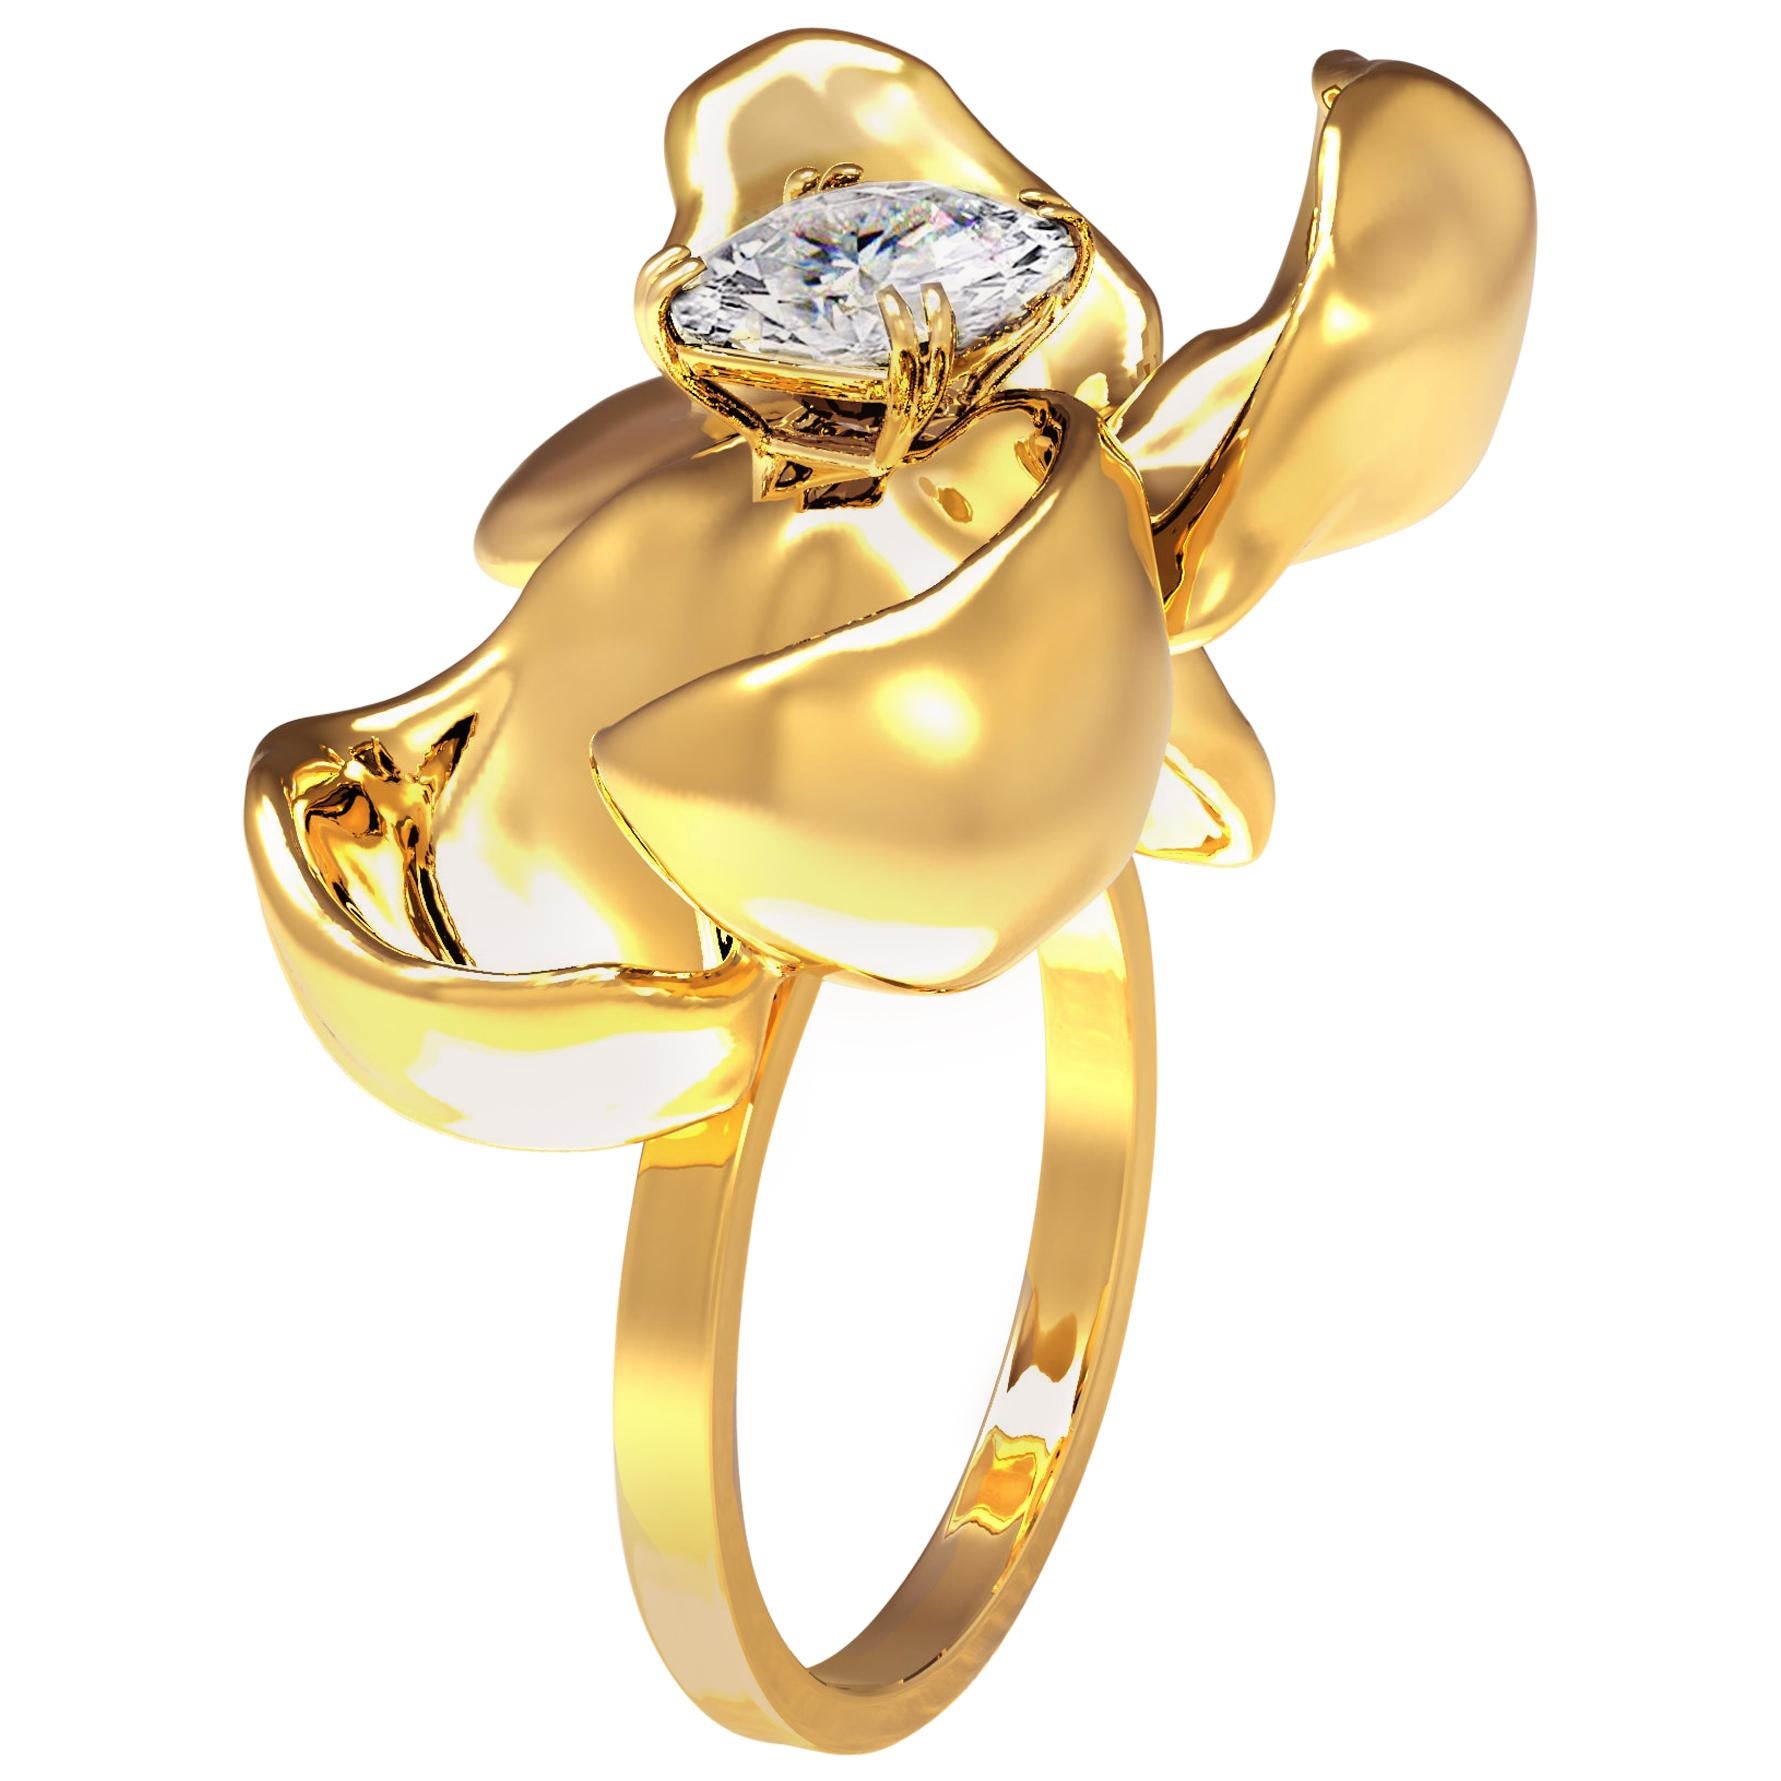 18 Karat White Gold Engagement Ring with GIA Certified 1 Carat Diamond ...